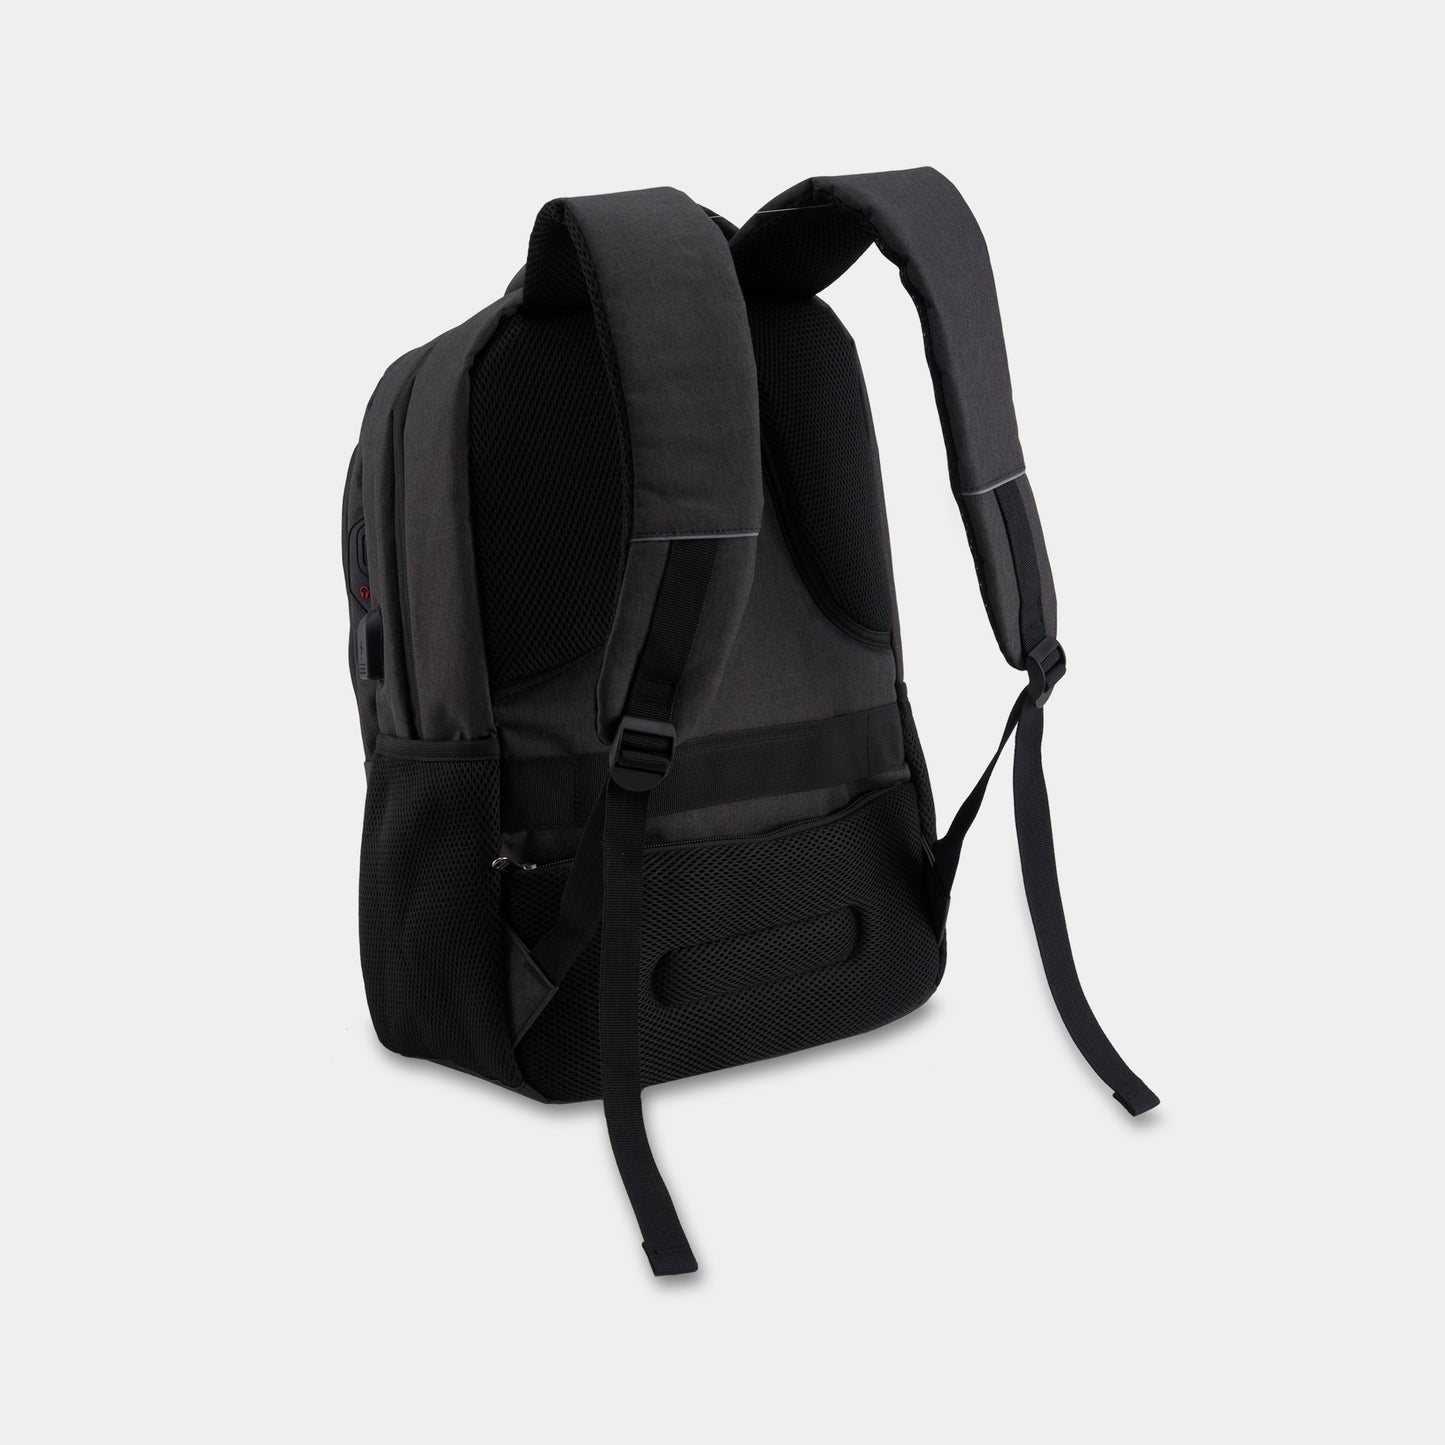 DAN Instructor Backpack - Black